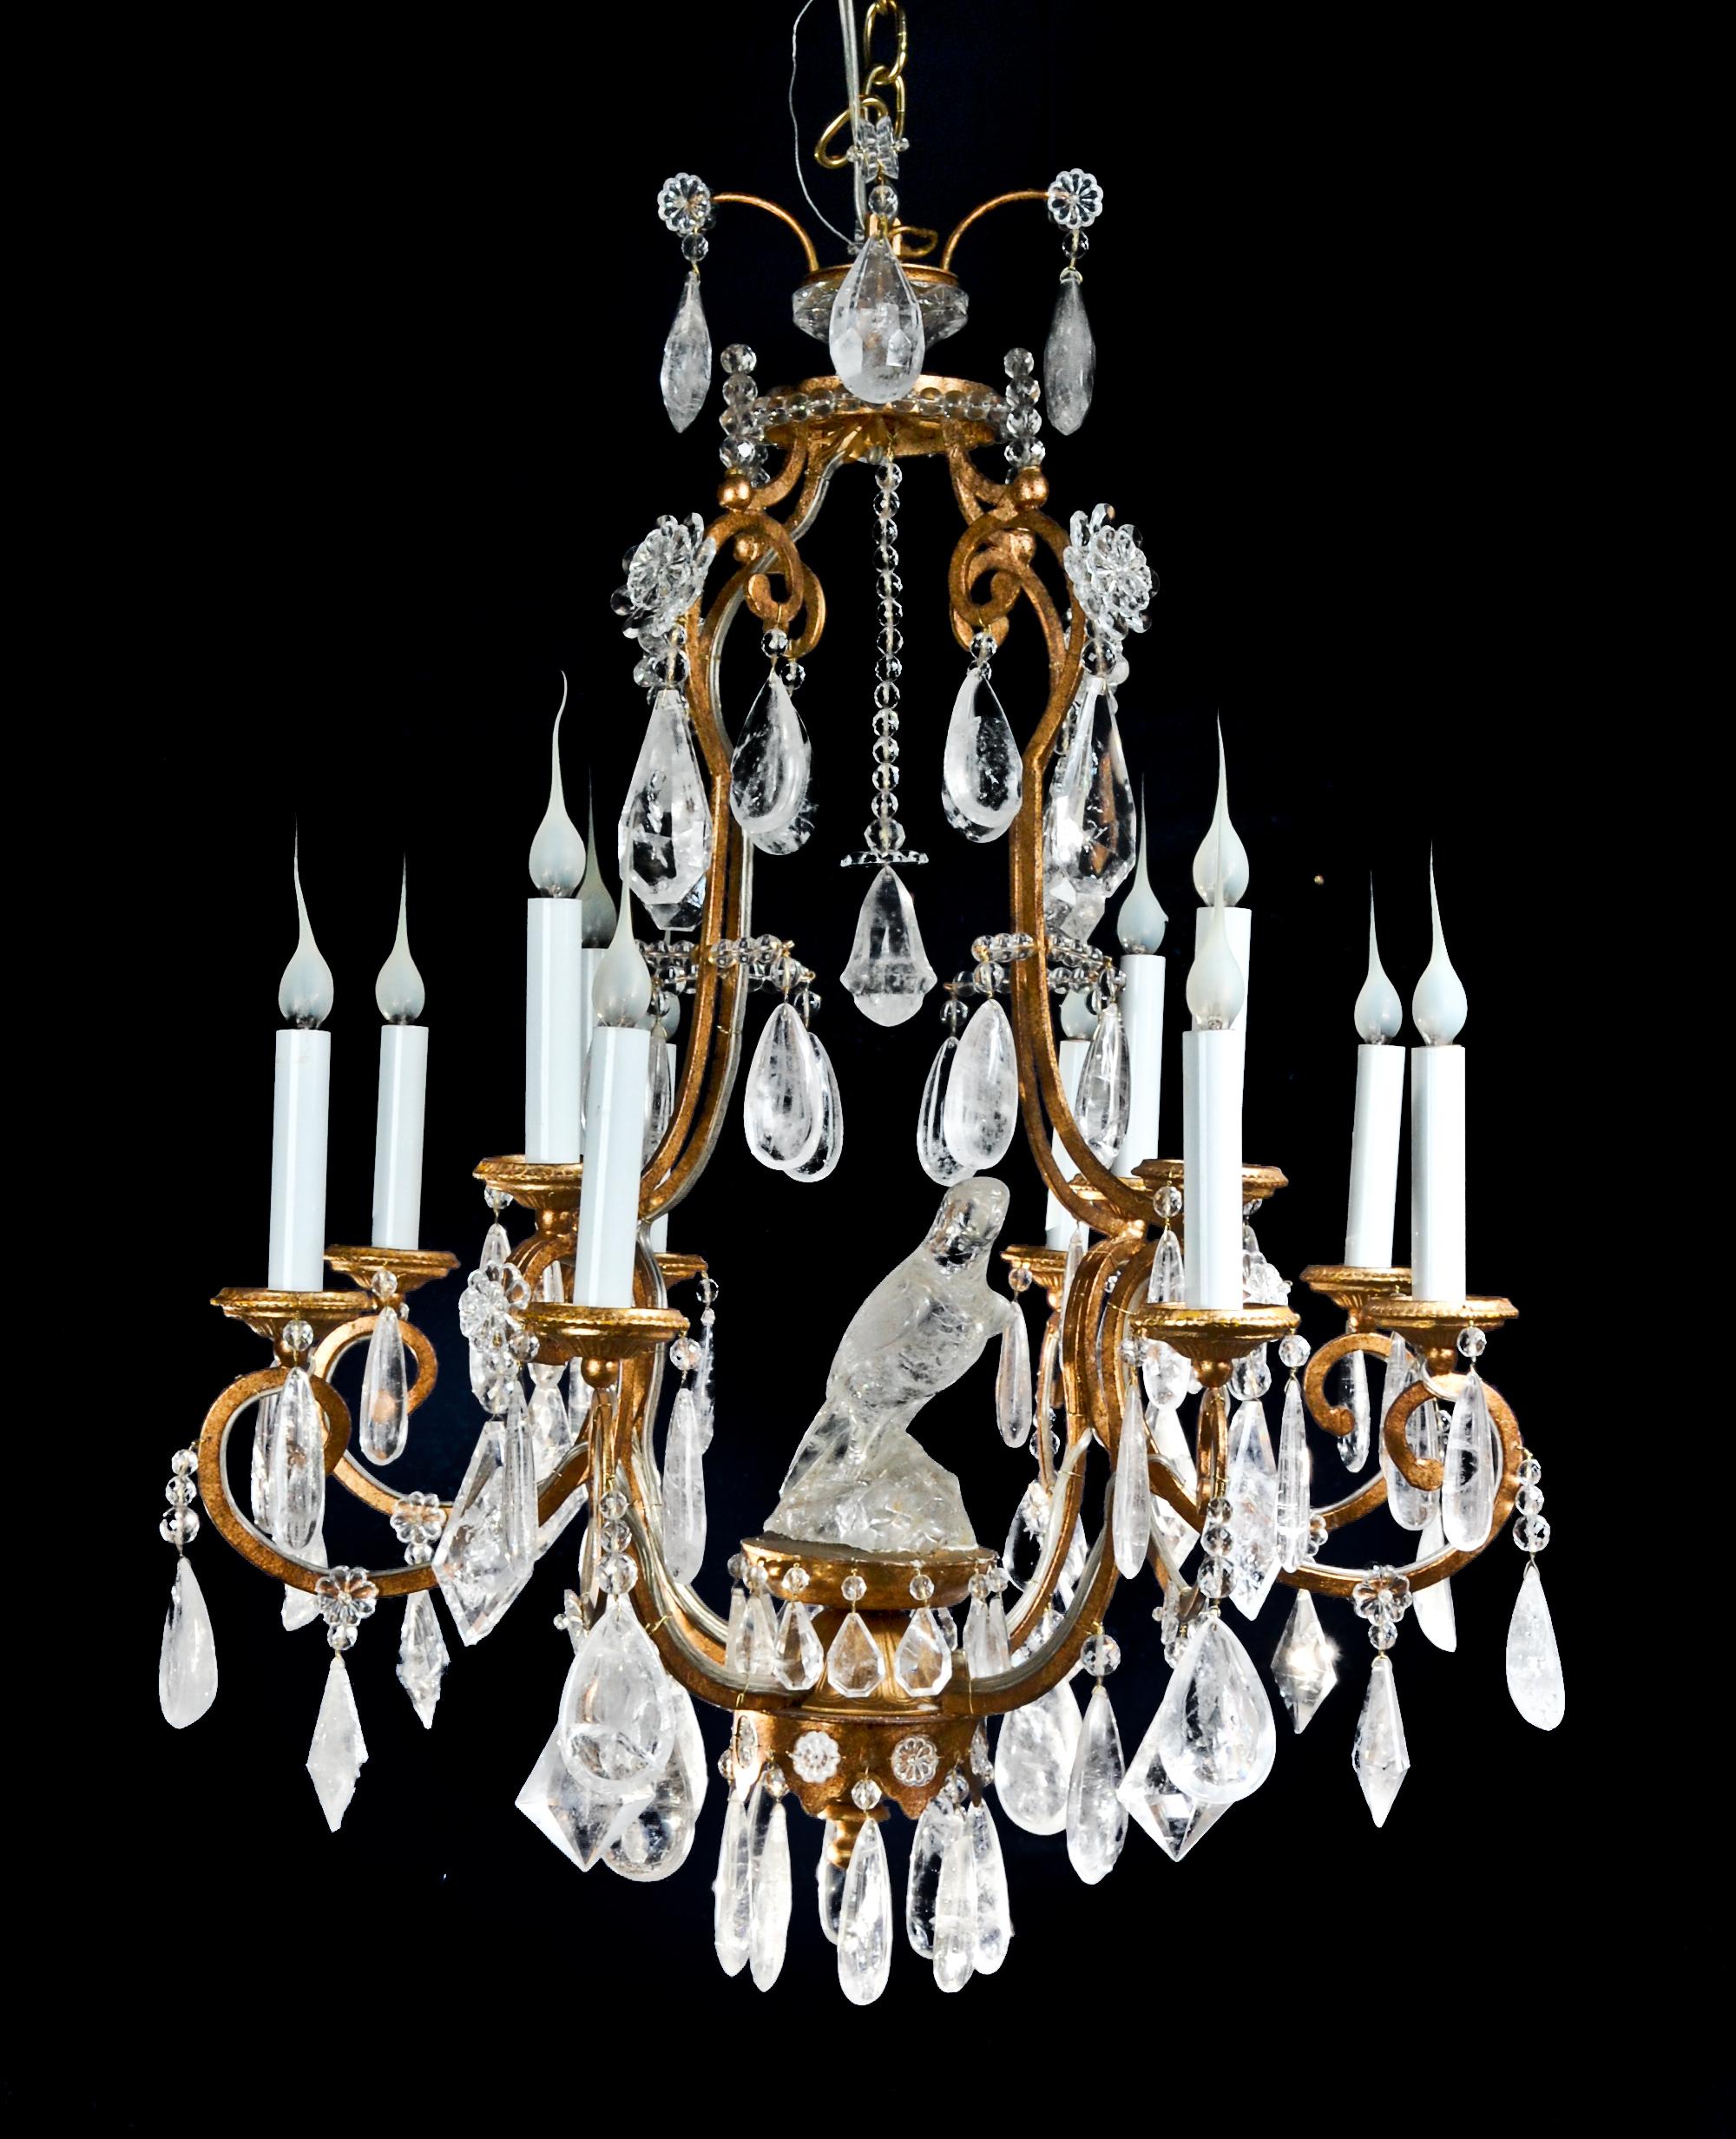 Un très unique et grand lustre français de style Louis XVI en bronze doré et cristal de roche taillé, avec plusieurs lumières à deux niveaux en forme de cage à perroquet, à la manière de Baguès. Ce lustre rare est agrémenté de prismes en cristal de